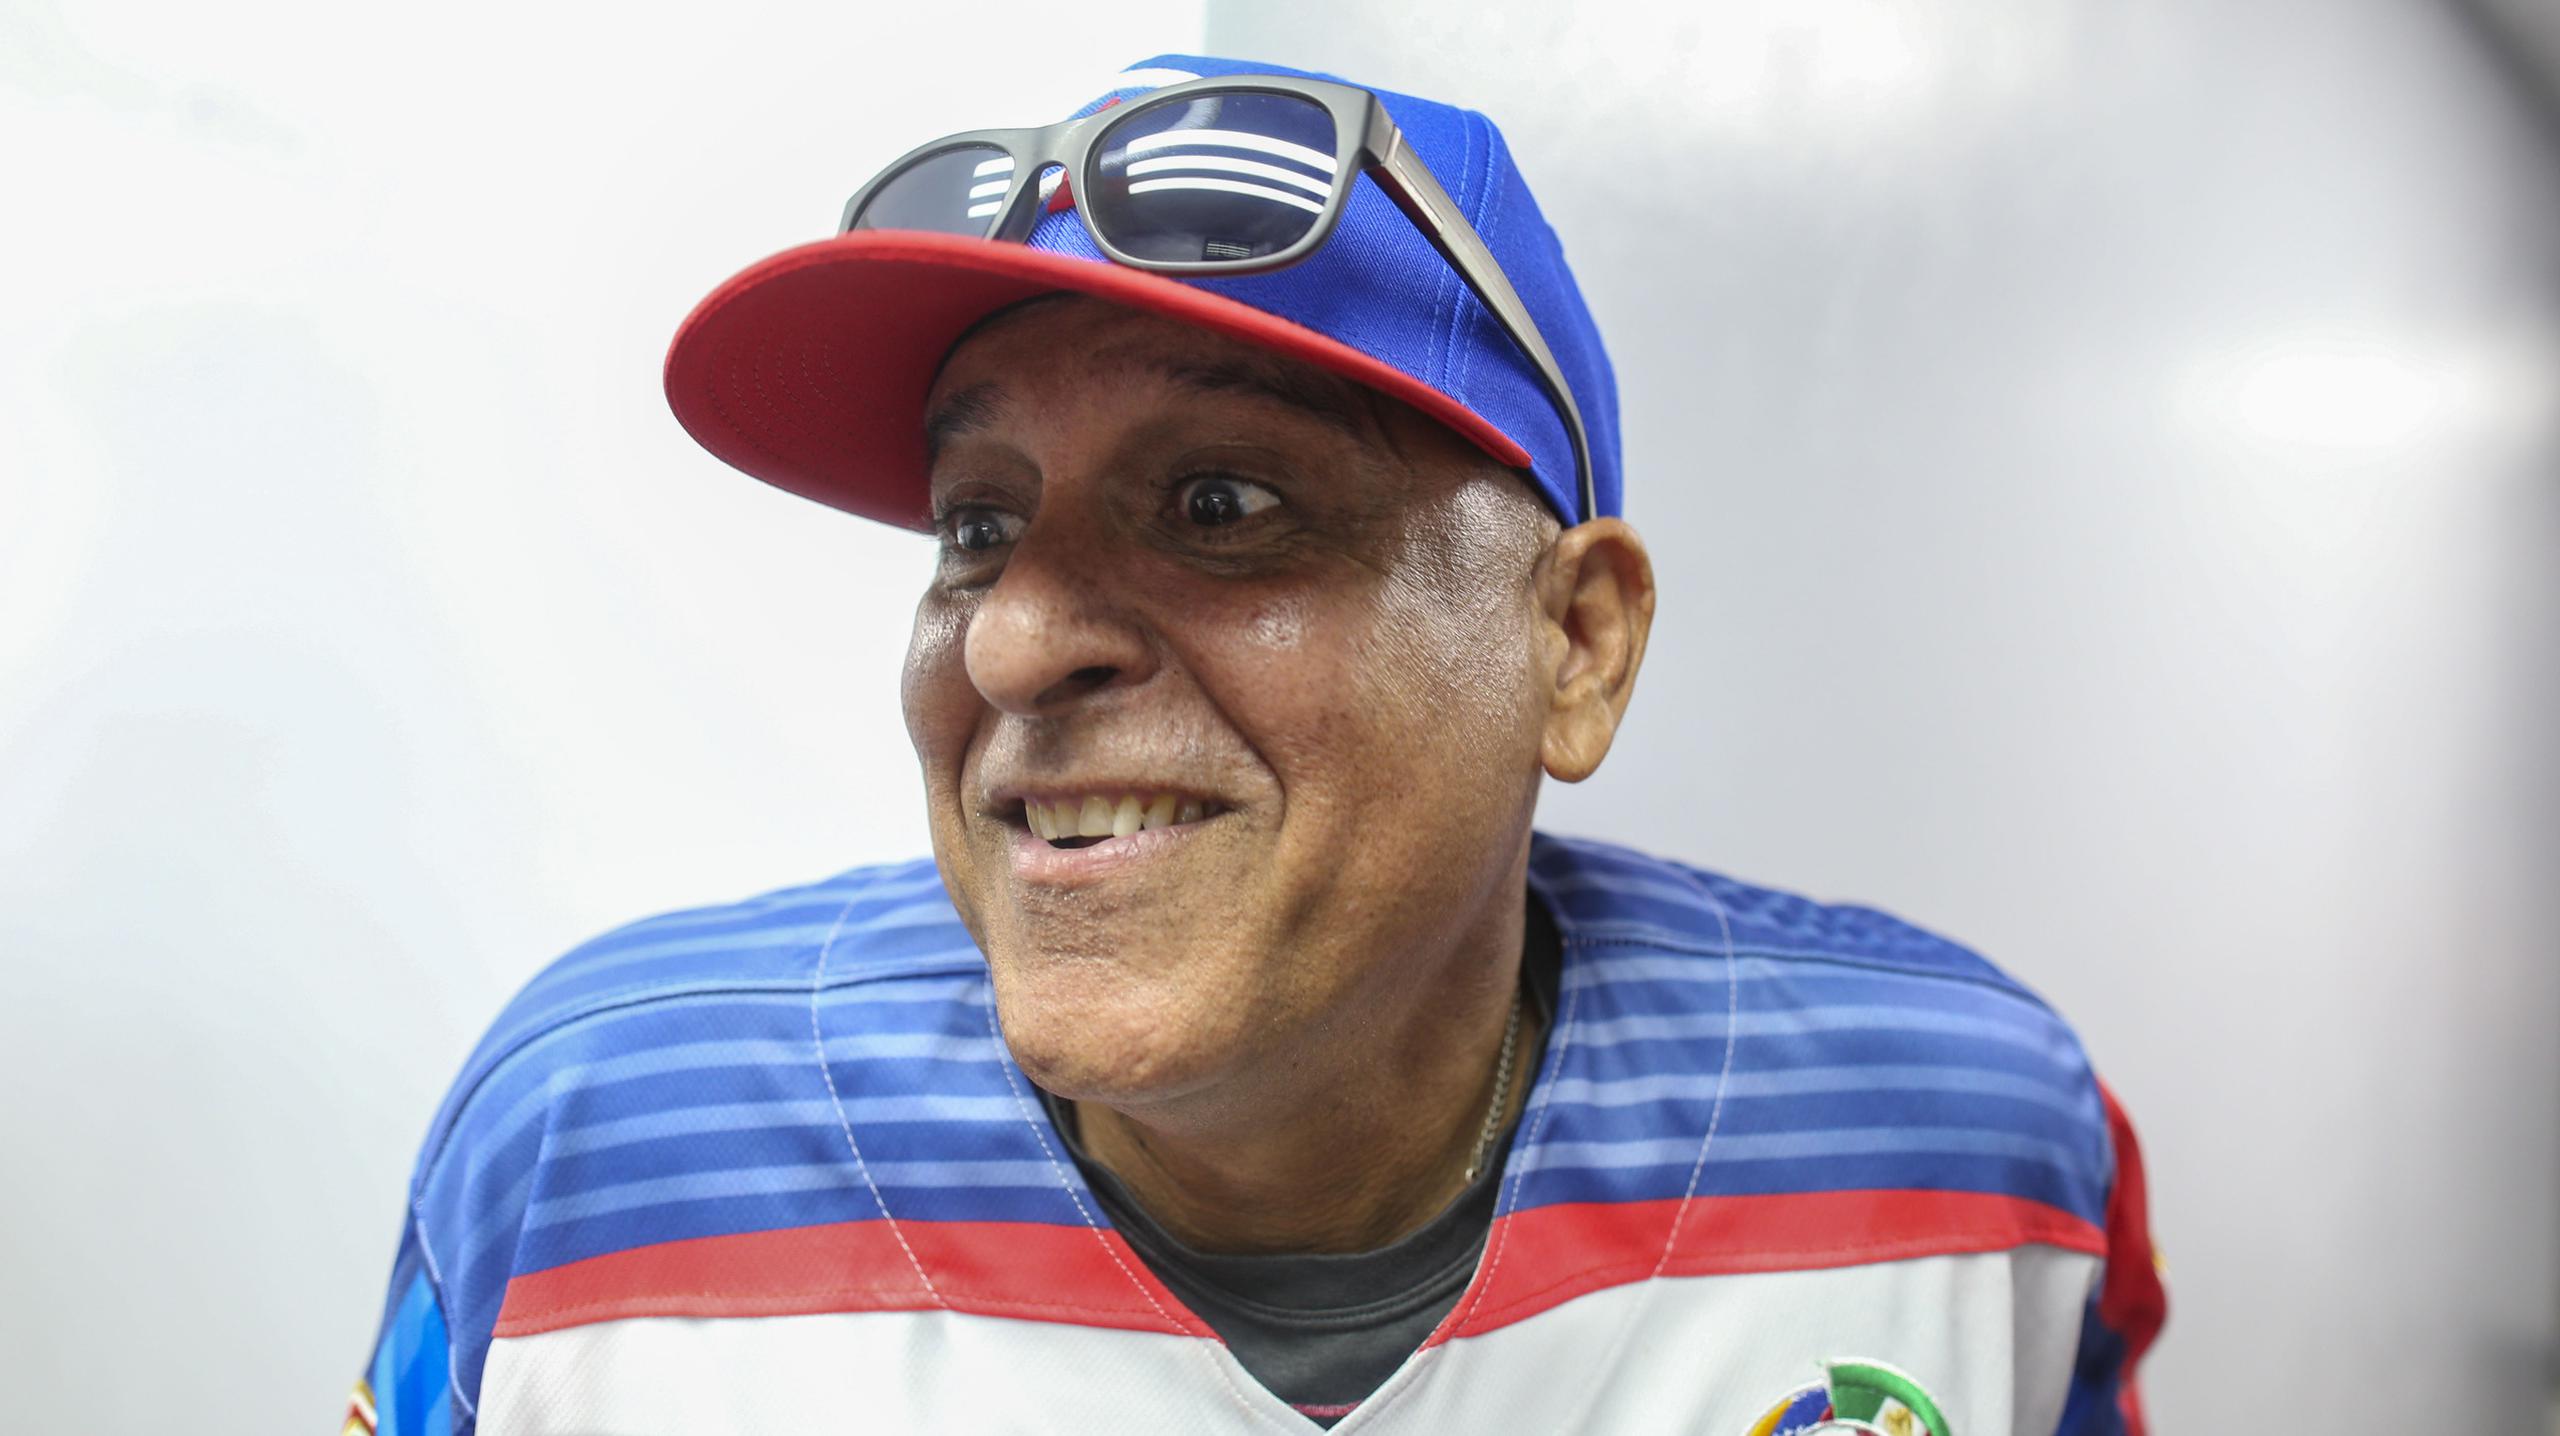 El dirigente boricua LIno Rivera atiende a los medios previo al debut de la República Dominicana en la Serie del Caribe 2020.